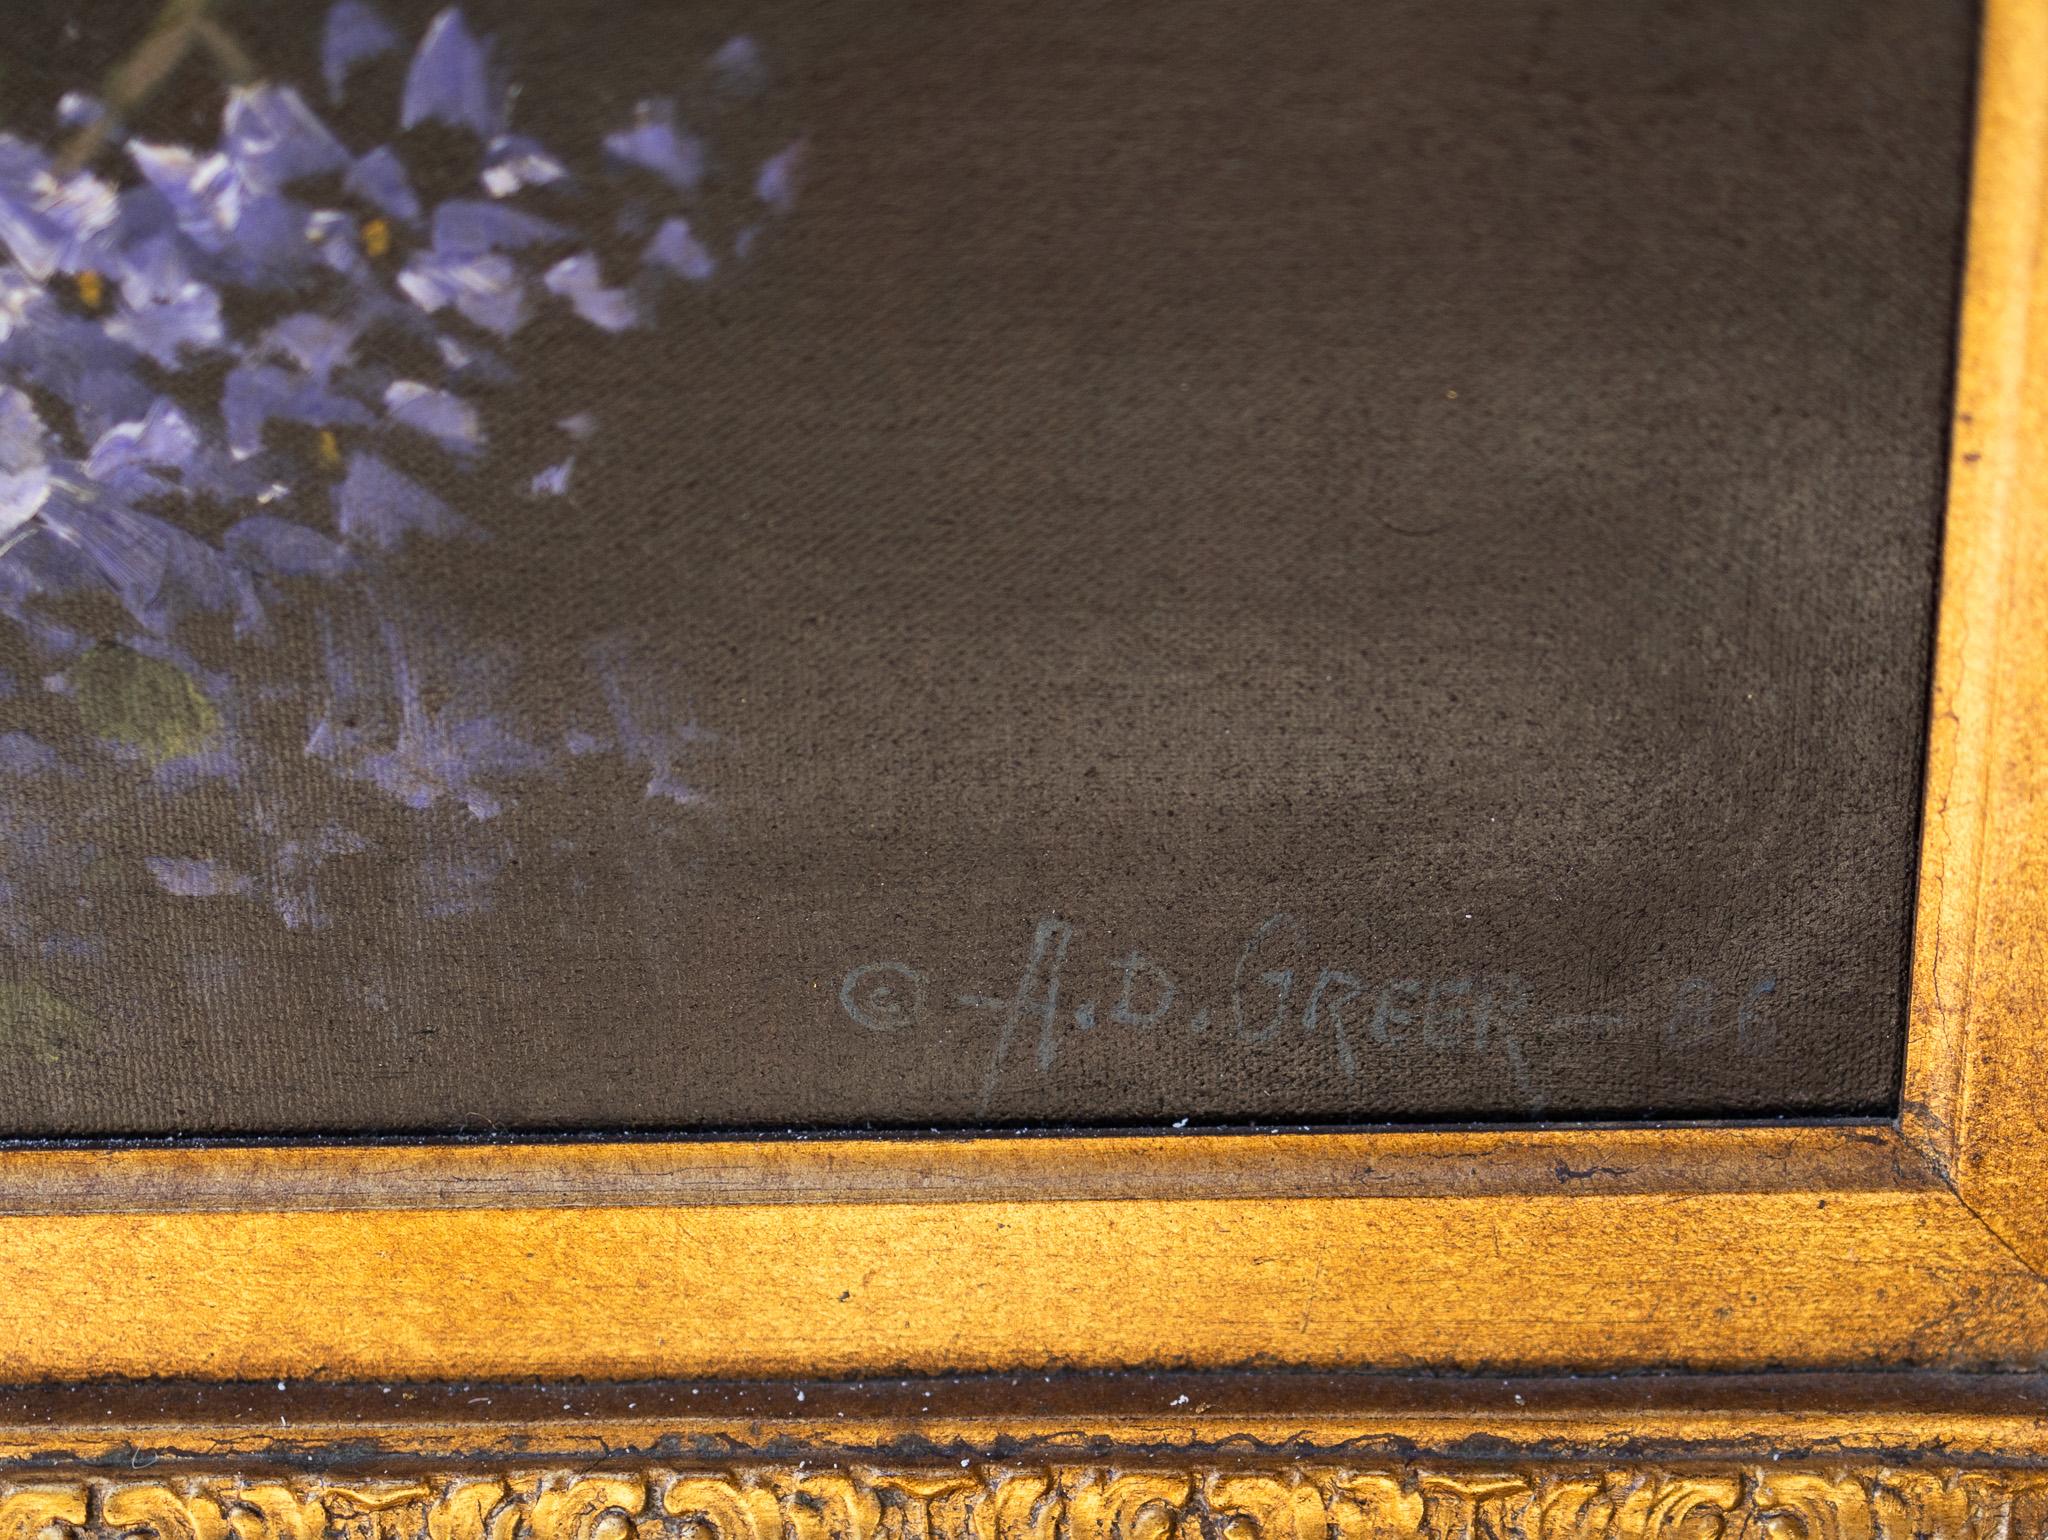 Dieses atemberaubende Blumenstillleben von A.D. Greer trägt einen Strauß aus leuchtend roten und weißen Rosen, violettem Flieder und roten und orangefarbenen Zinnienblüten. Mit einer Größe von 36 x 48 Zoll ist dieses Stück eine beeindruckende